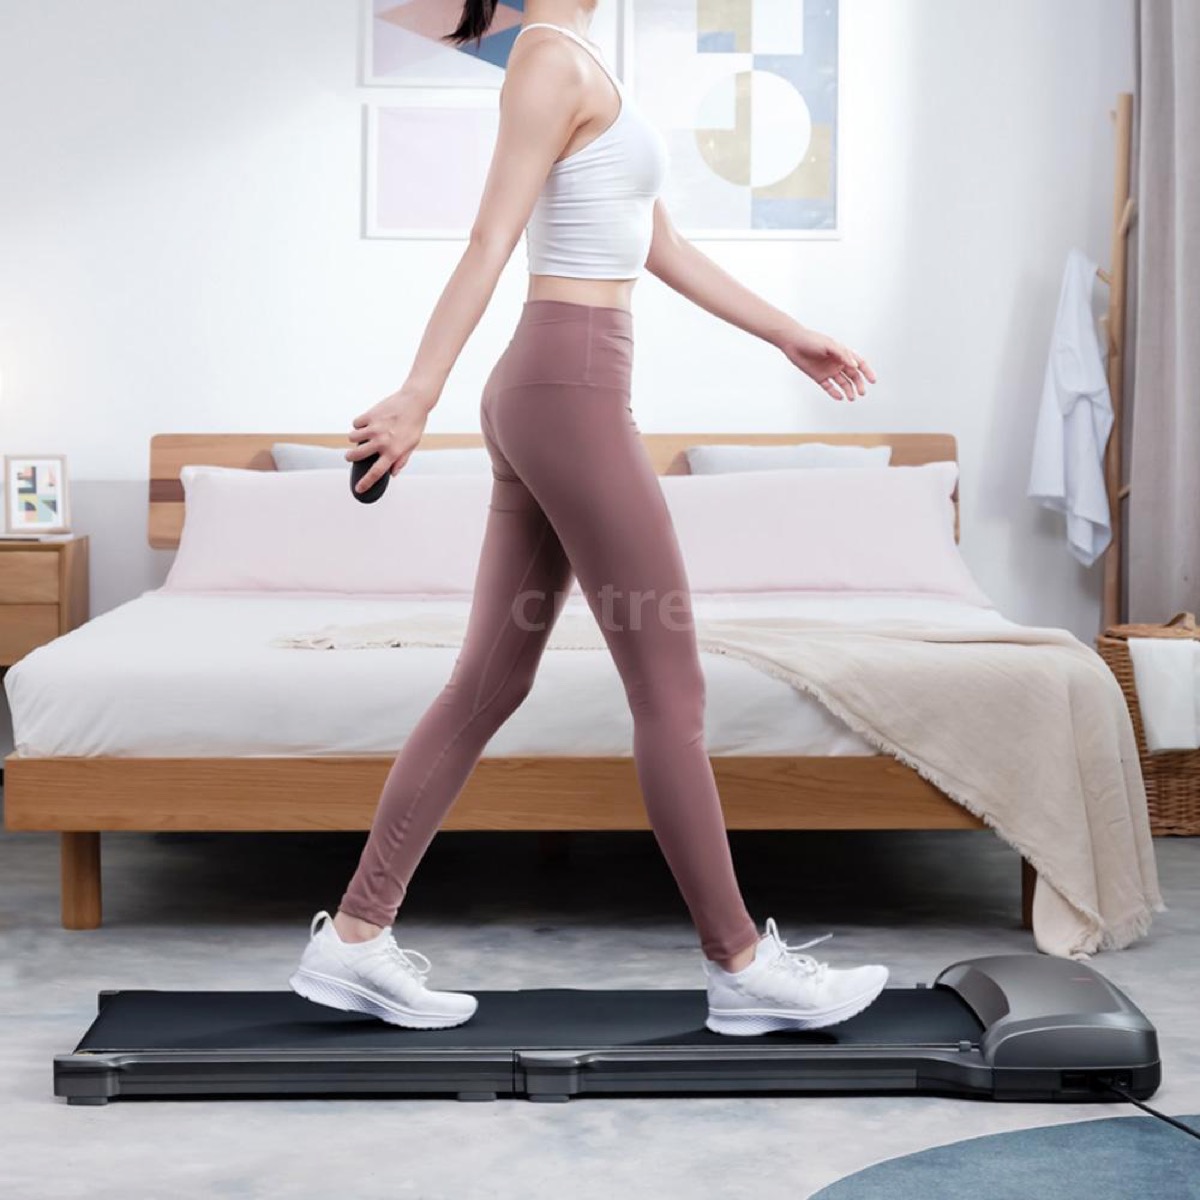 Solo 279 € lo Xiaomi WalkingPad C1, il tapis roulant per camminate e passeggiate indoor in casa